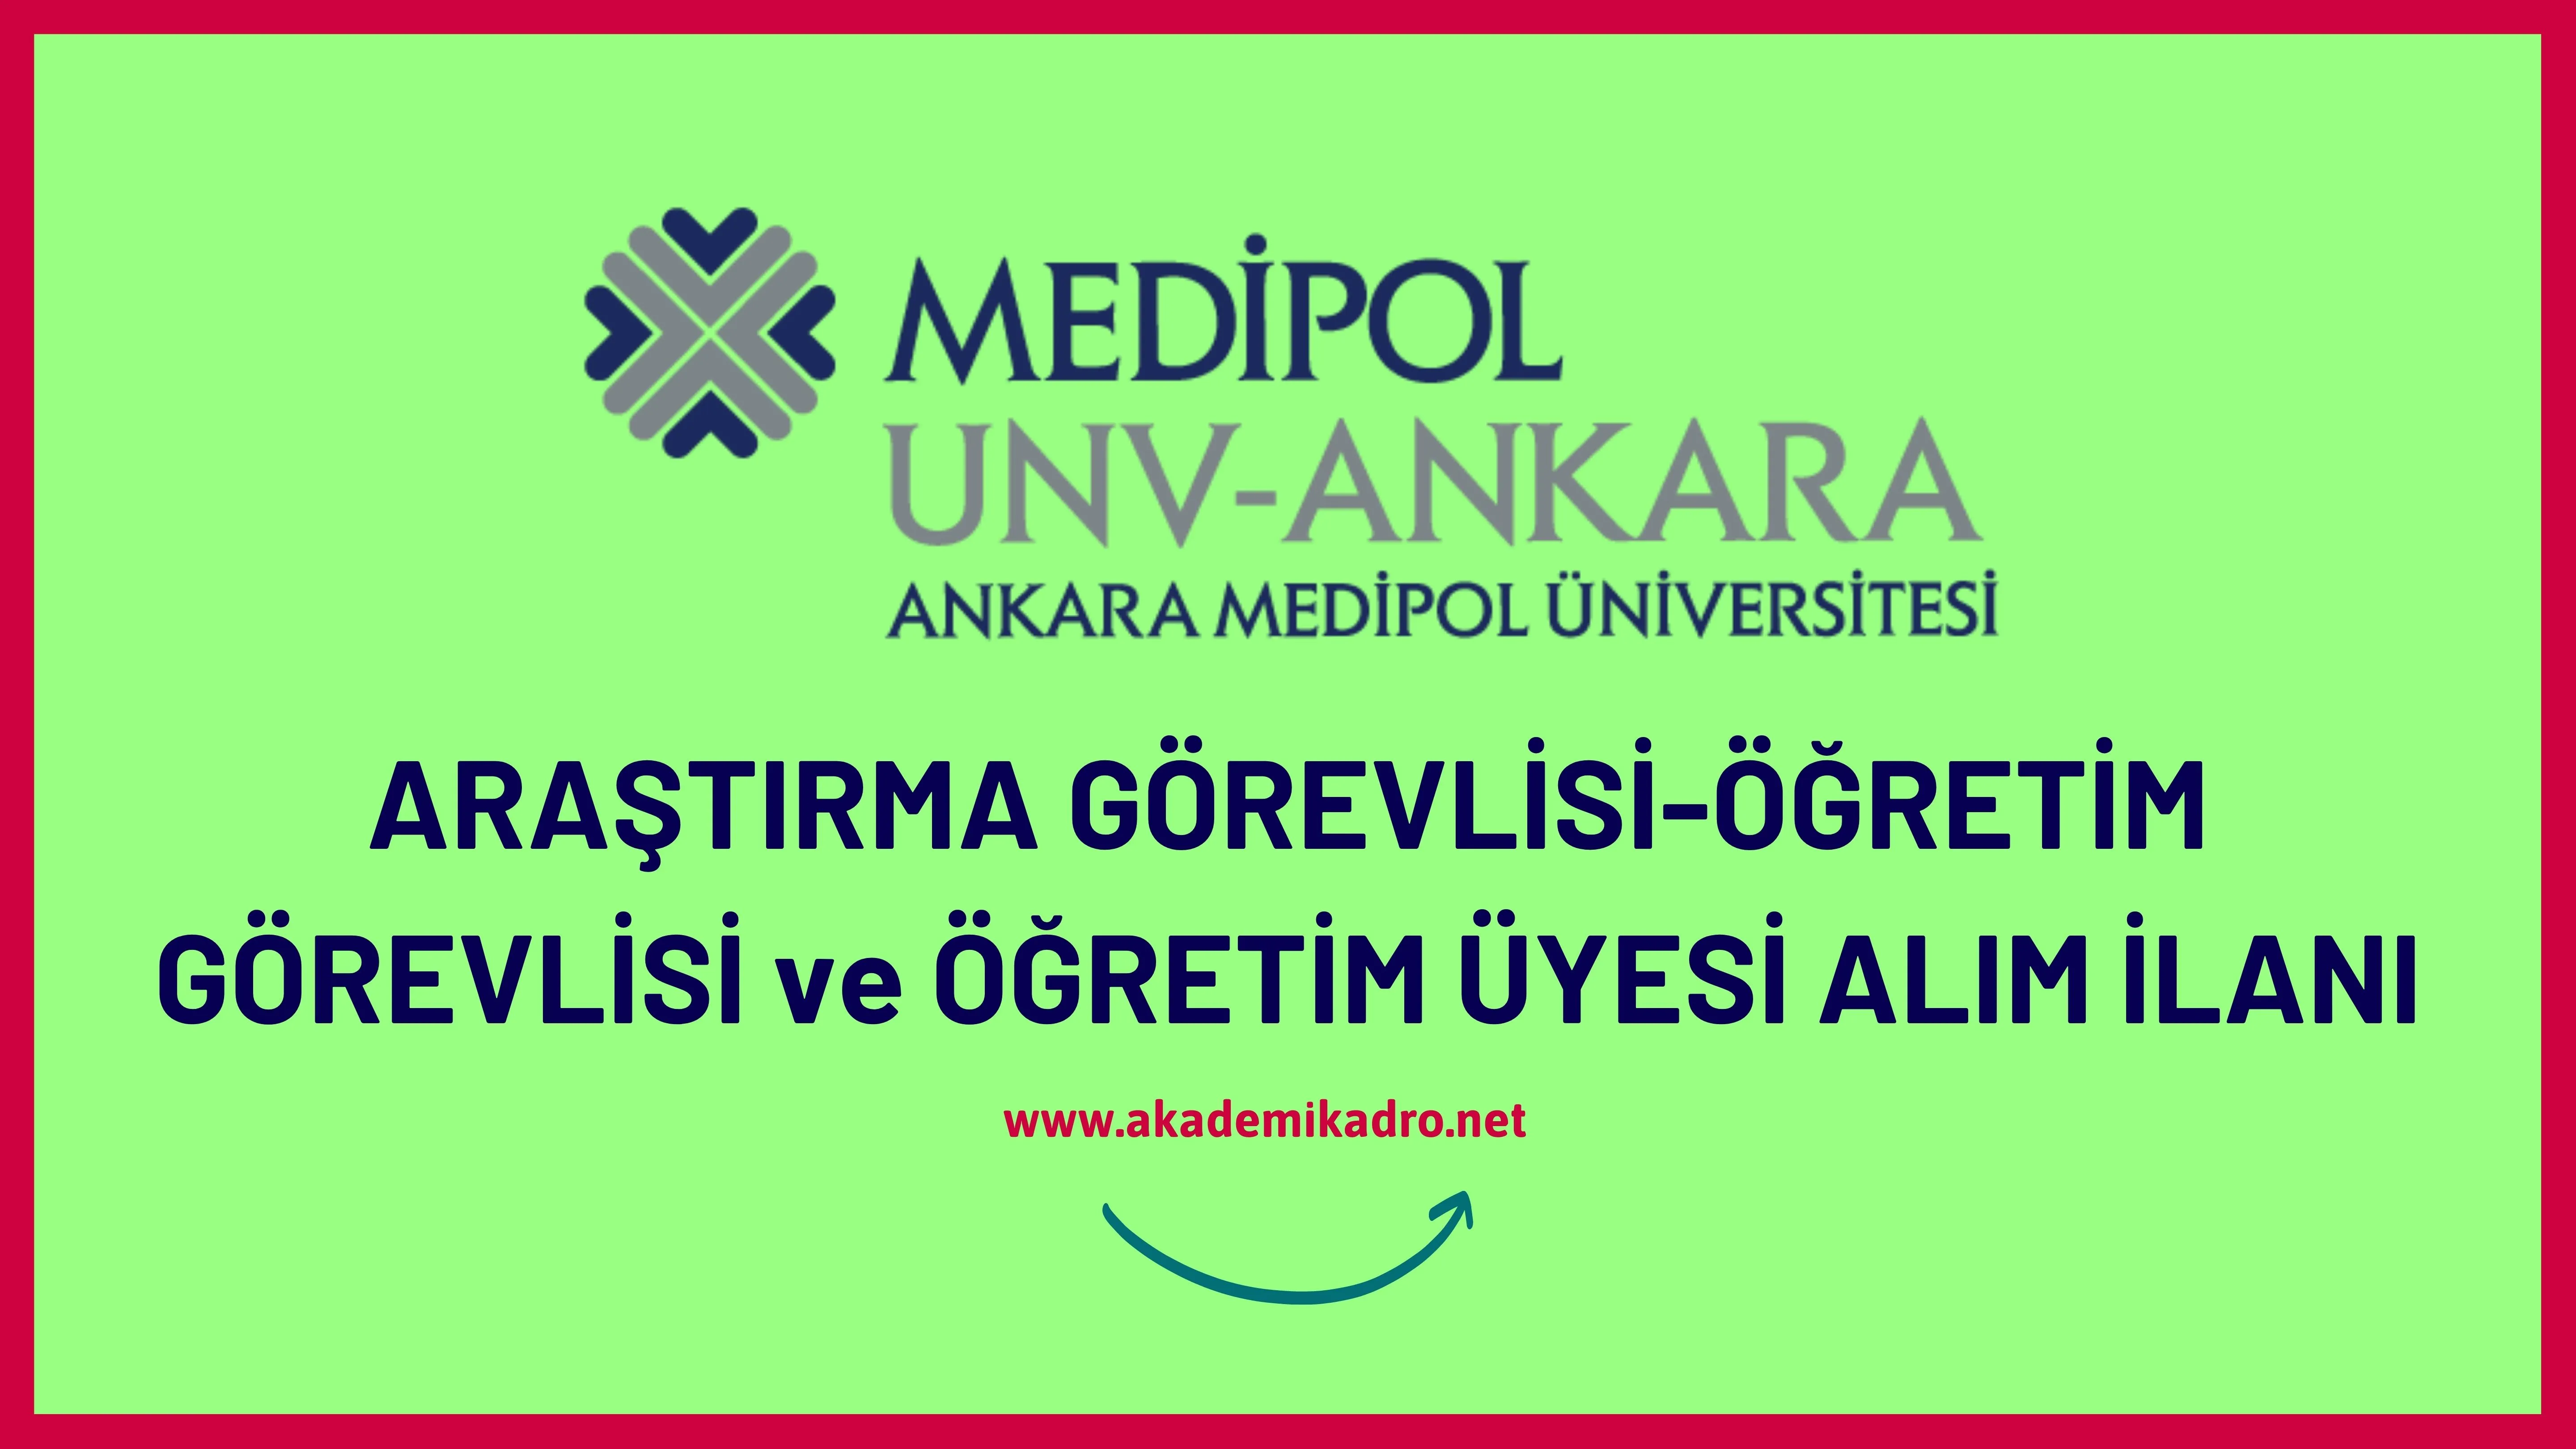 Ankara Medipol Üniversitesi 4 Araştırma görevlisi, 4 Öğretim görevlisi ve 7 Öğretim üyesi alacak.